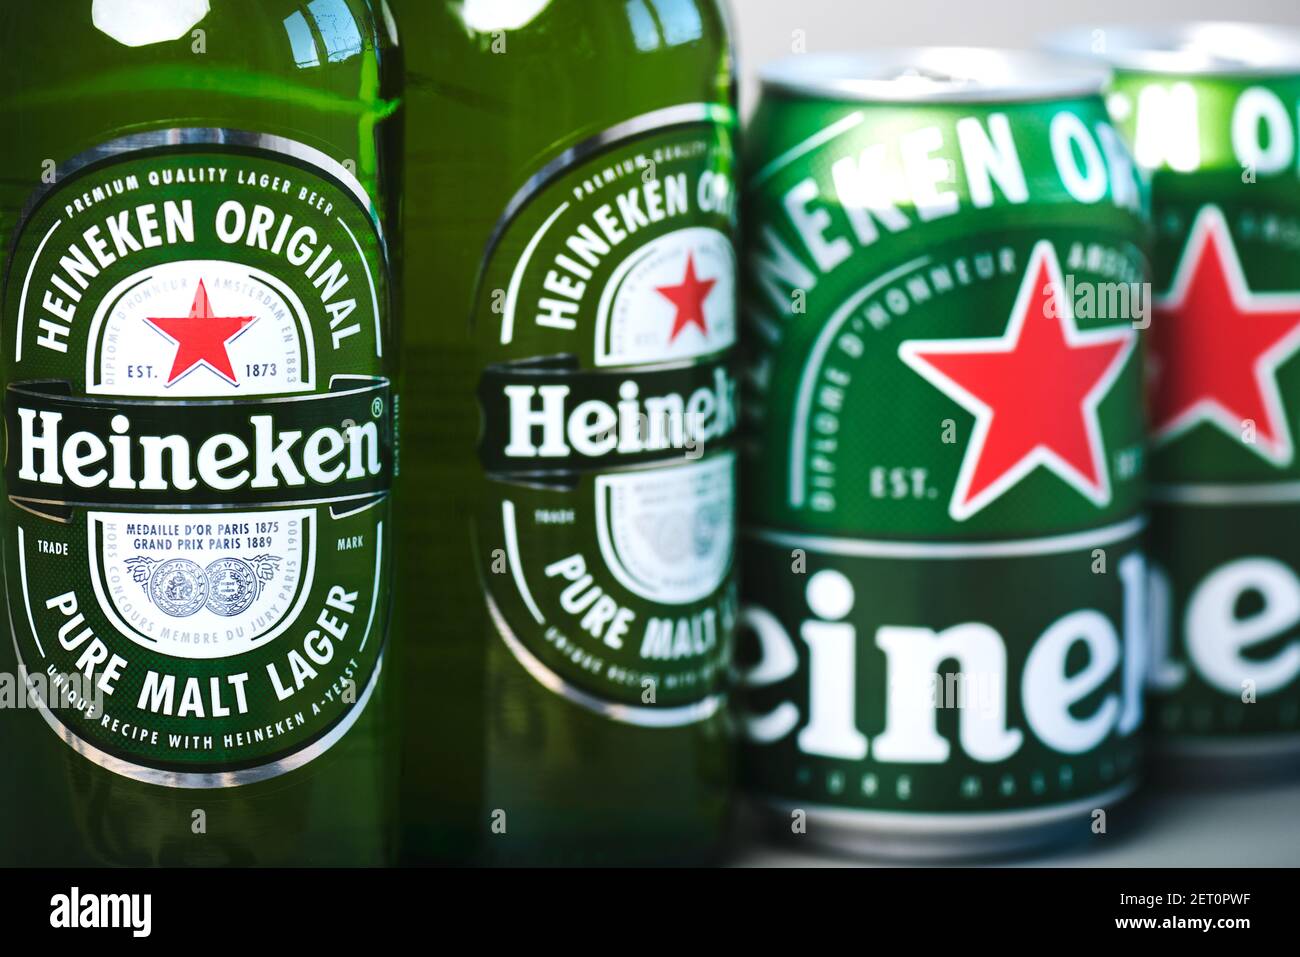 Heineken lager beer bottles and Heineken beer aluminum cans on green background Stock Photo